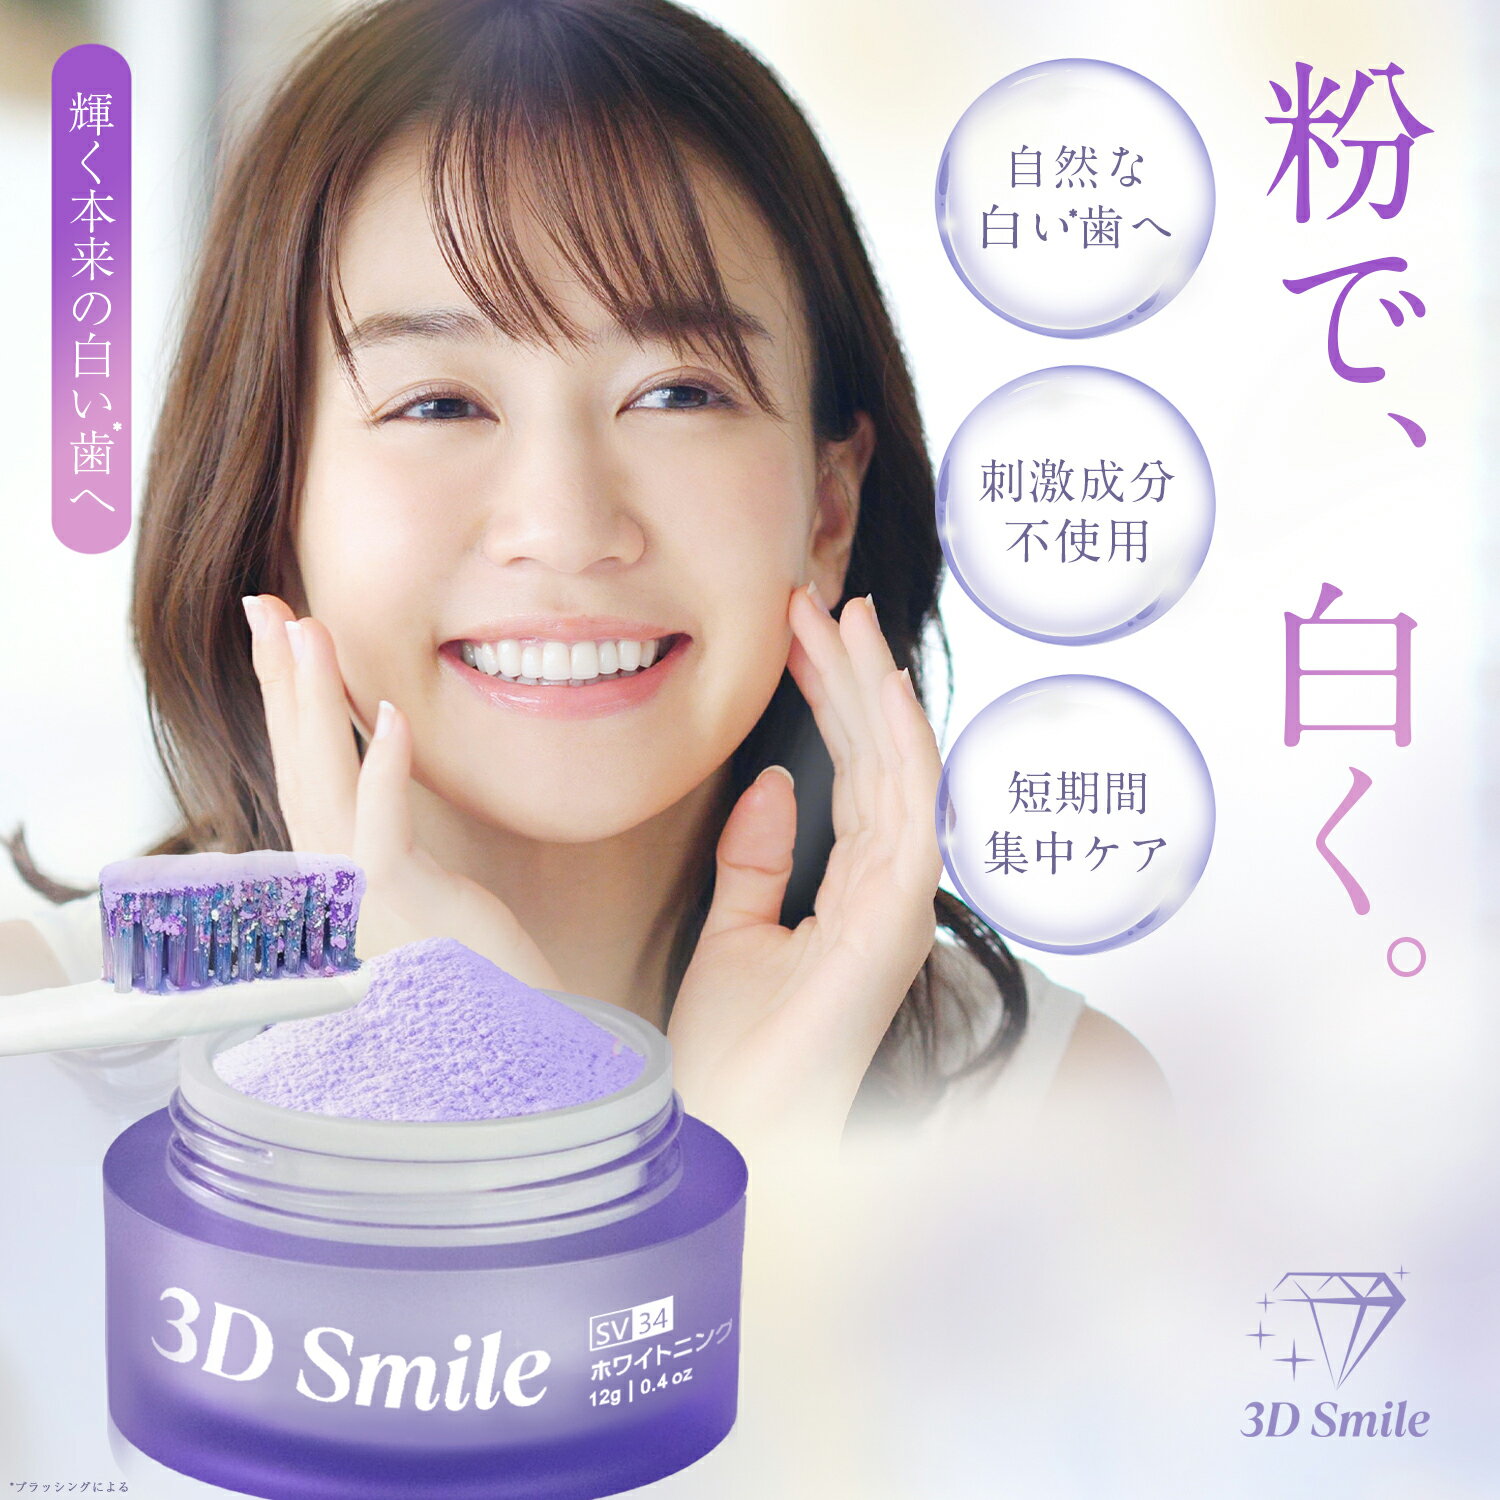 【500円OFFクーポン配布中】3D Smile ホワイトニング パウダー V34 パープル 粉歯磨きブライトニング セルフホワイト…